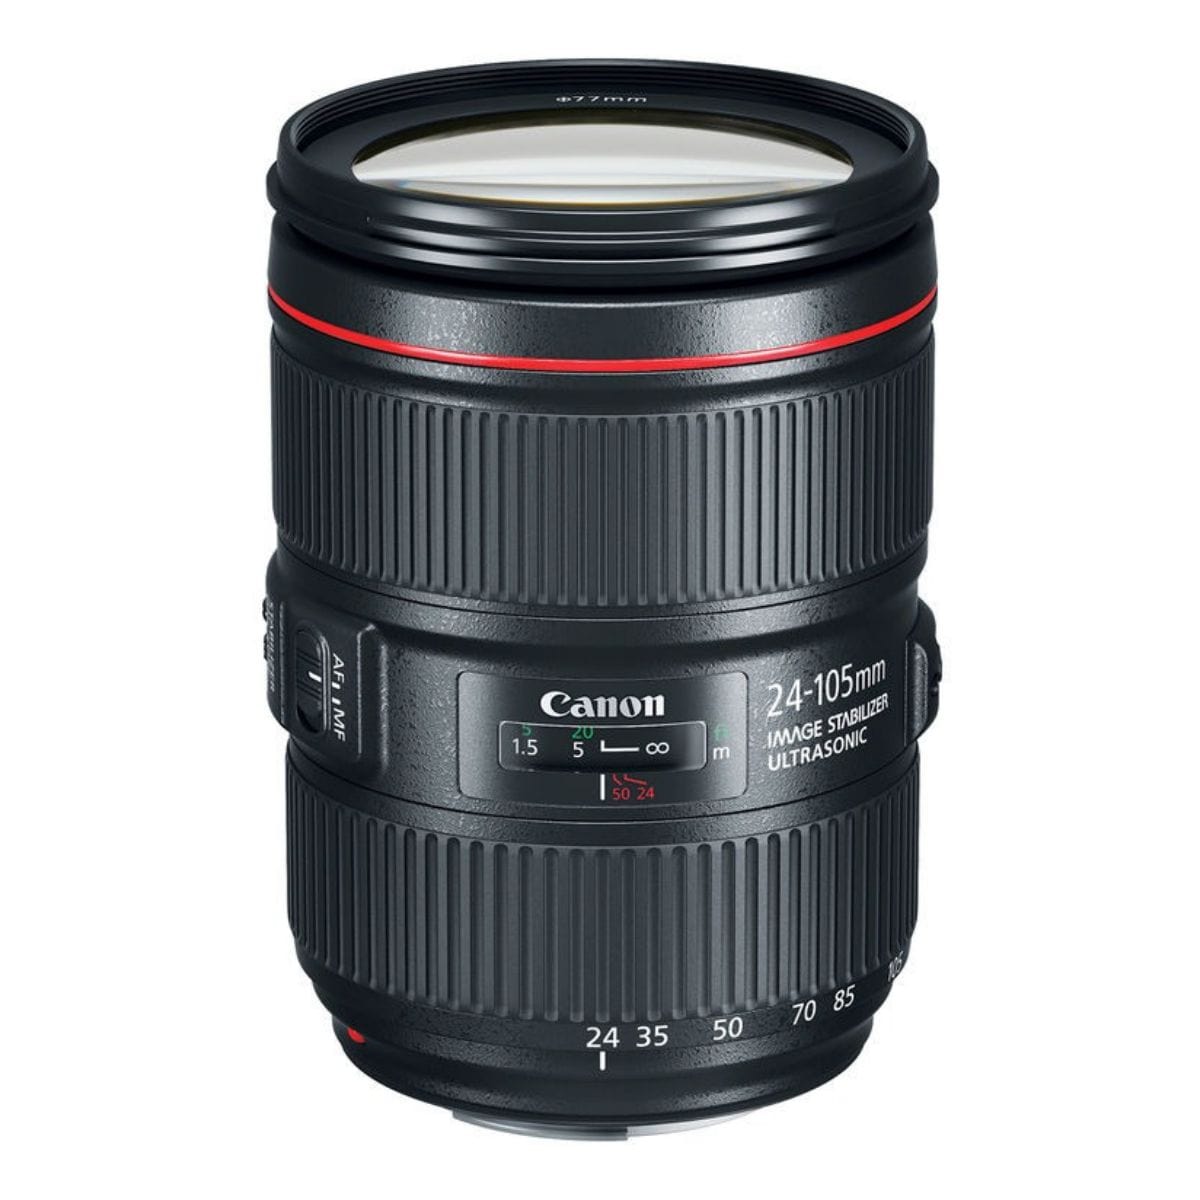 No te pierdas esta oferta: Razones para adquirir la Canon EOS 6D Mark II -  SaveMoney Blog